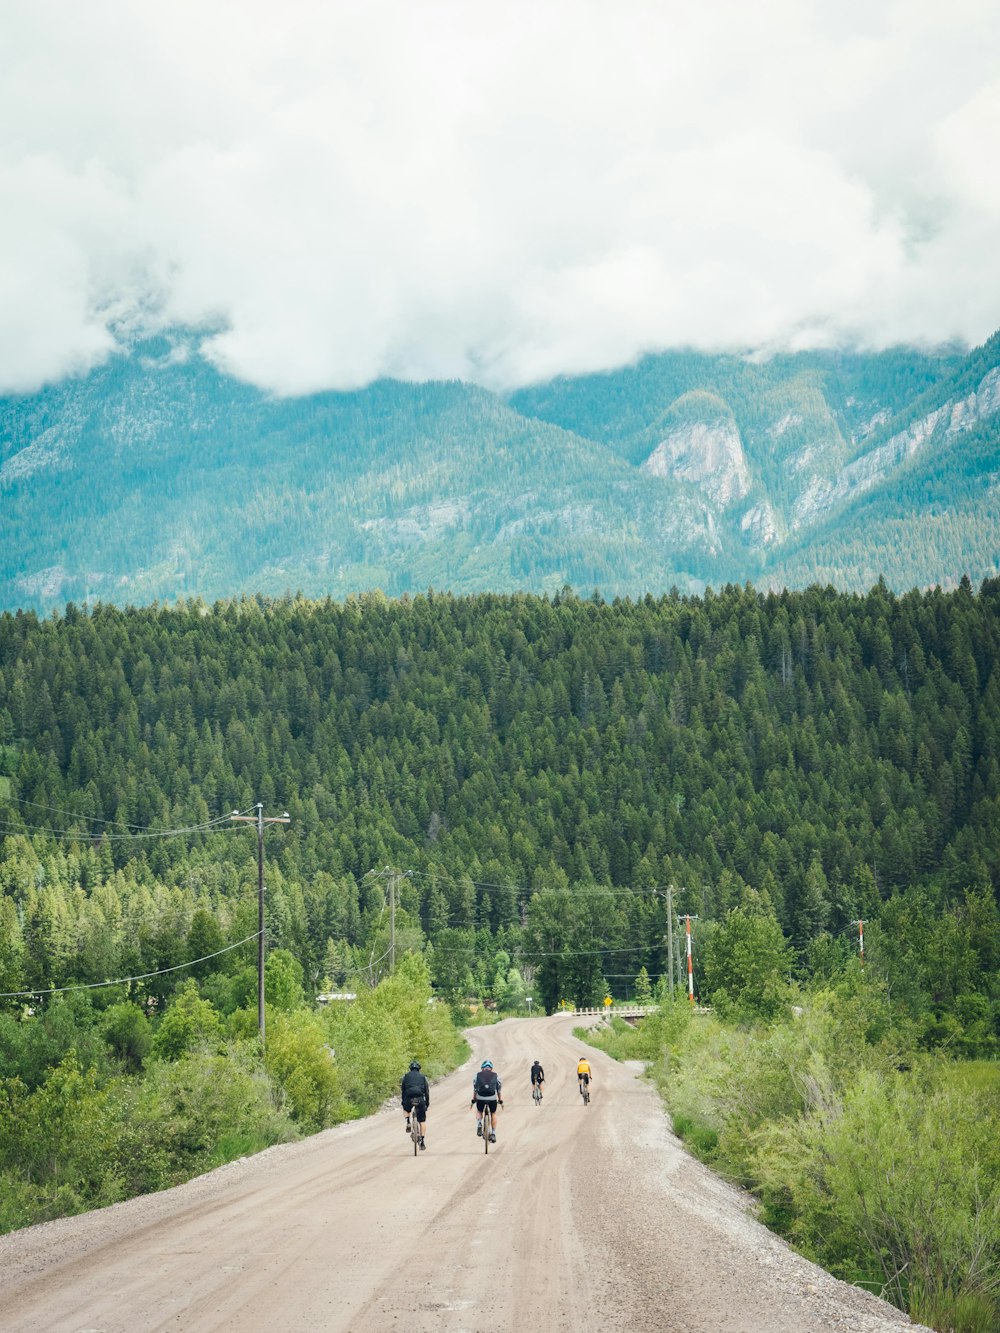 산맥 앞 비포장 도로에서 자전거를 타는 사람들